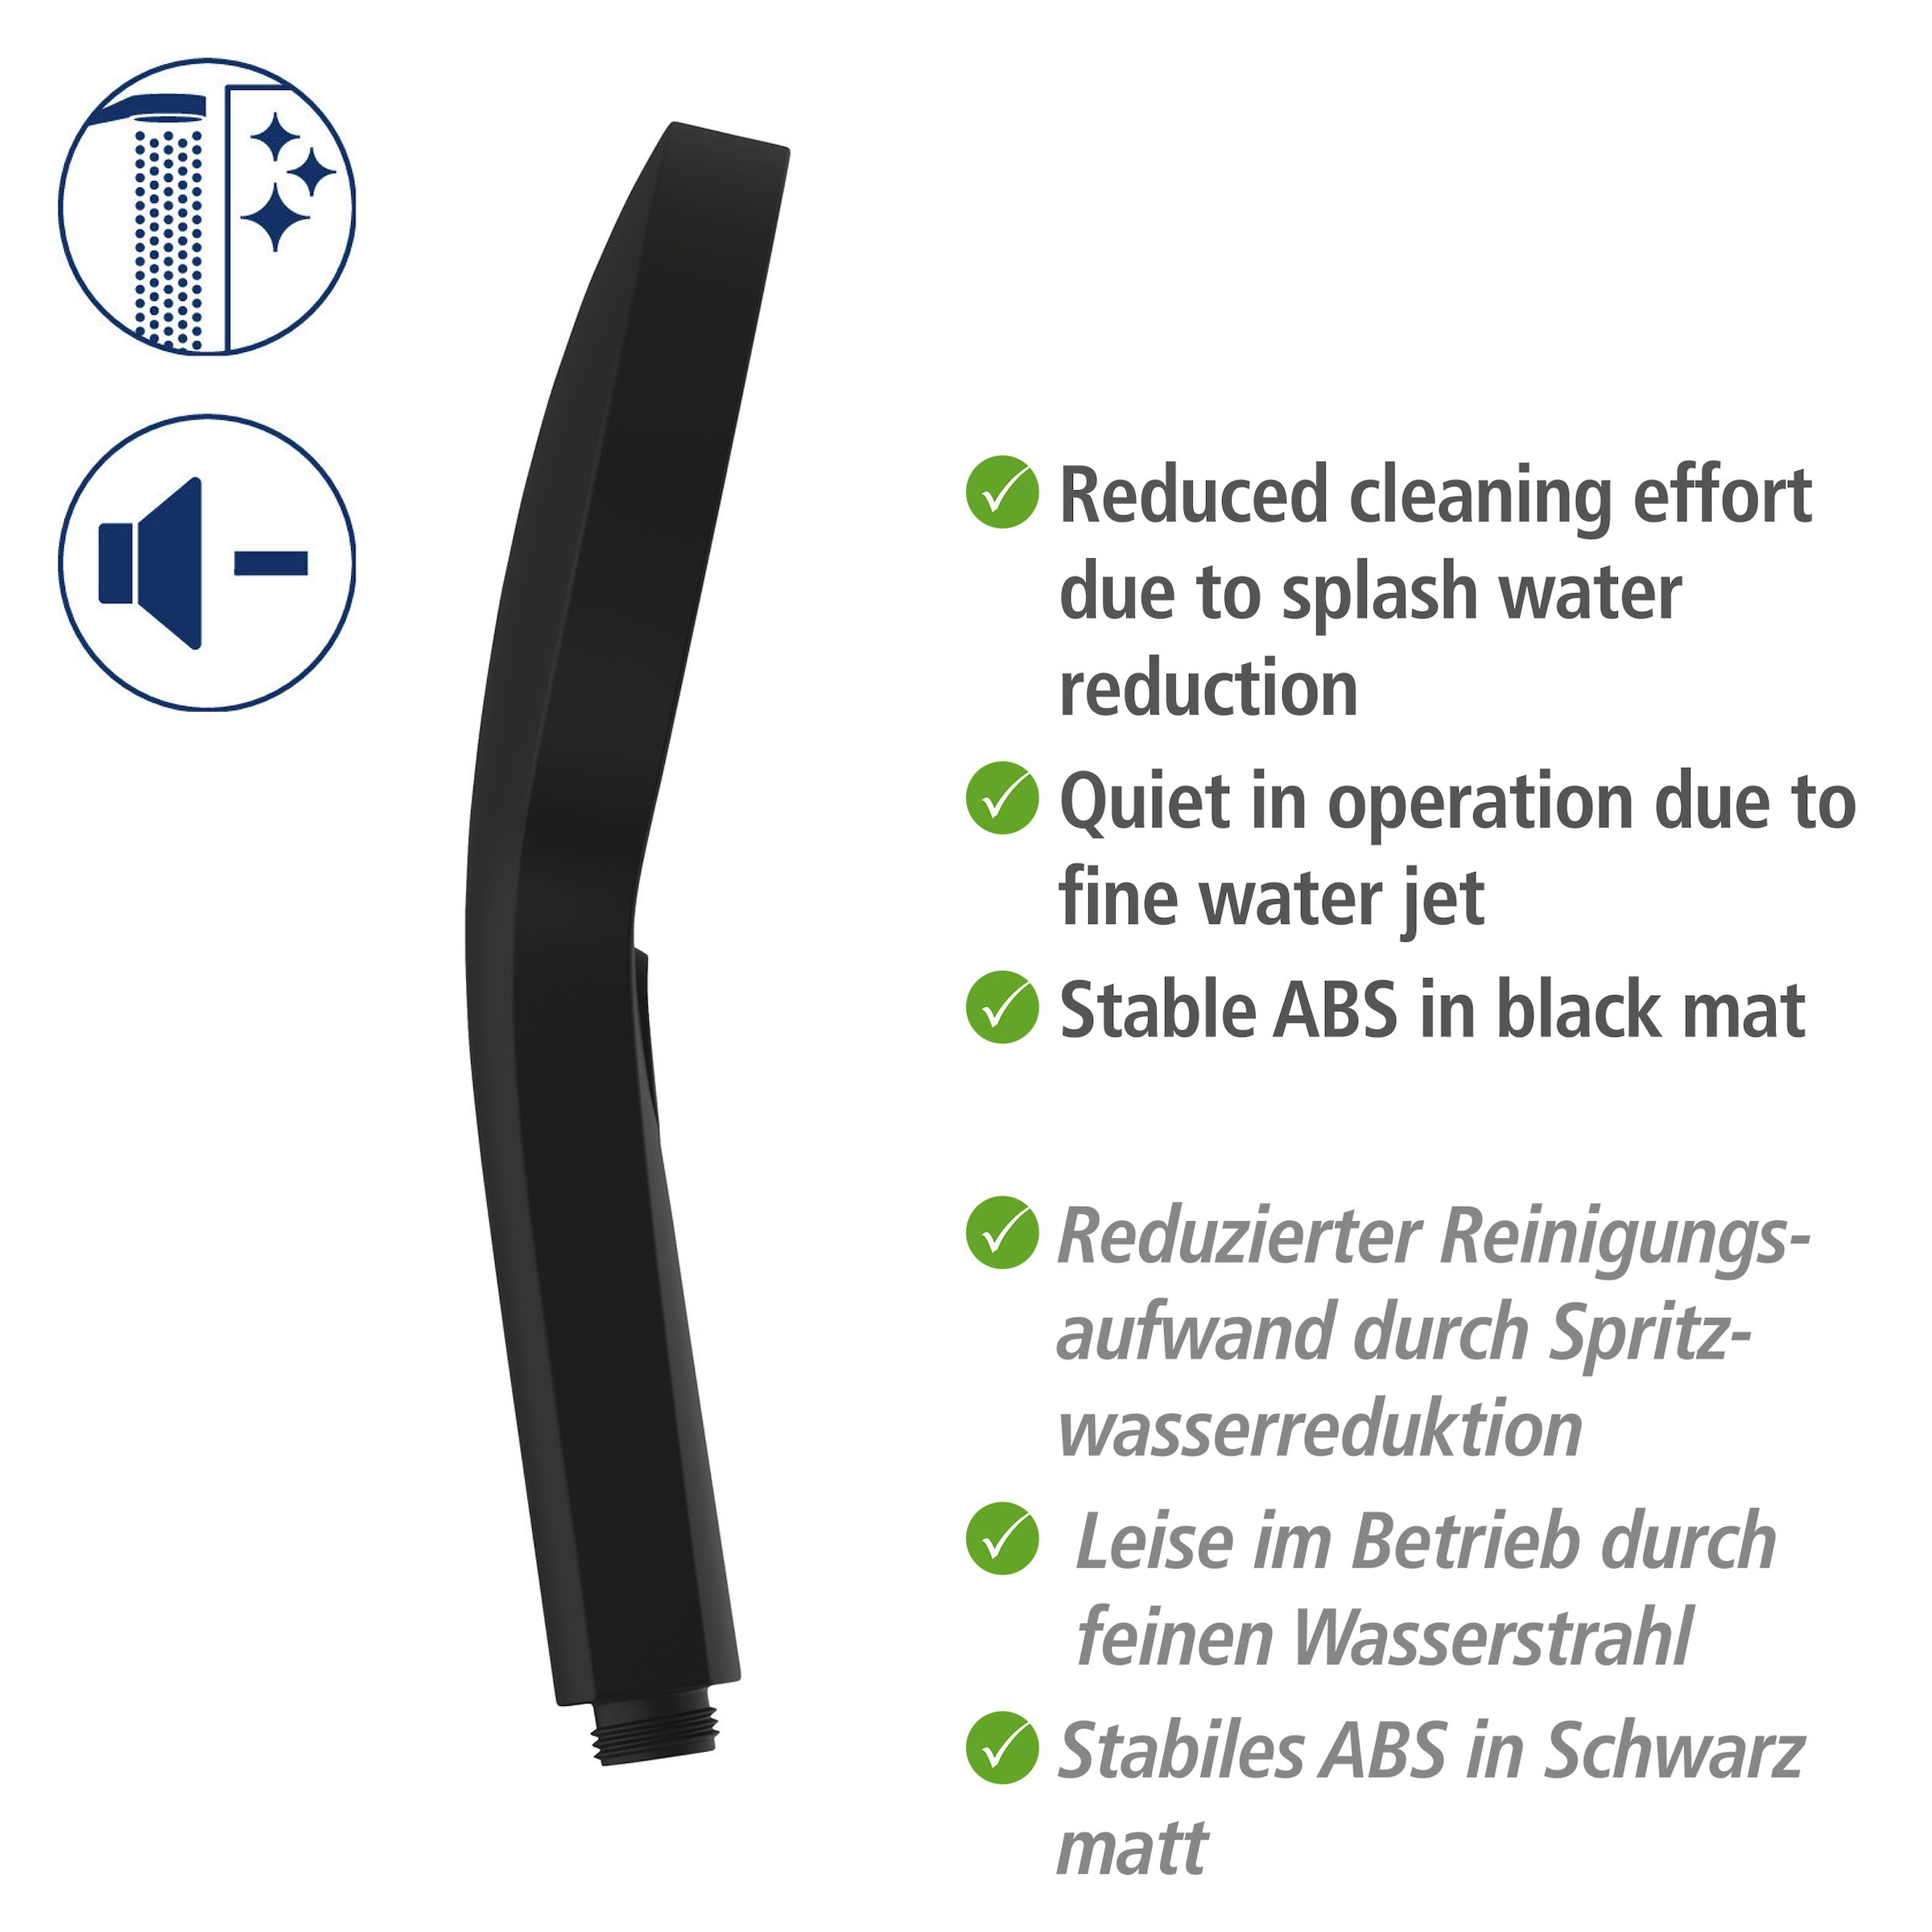 WENKO Duschsystem »Softwater«, einfacher Anschluss an bestehende Armatur oder Wandanschlussbogen